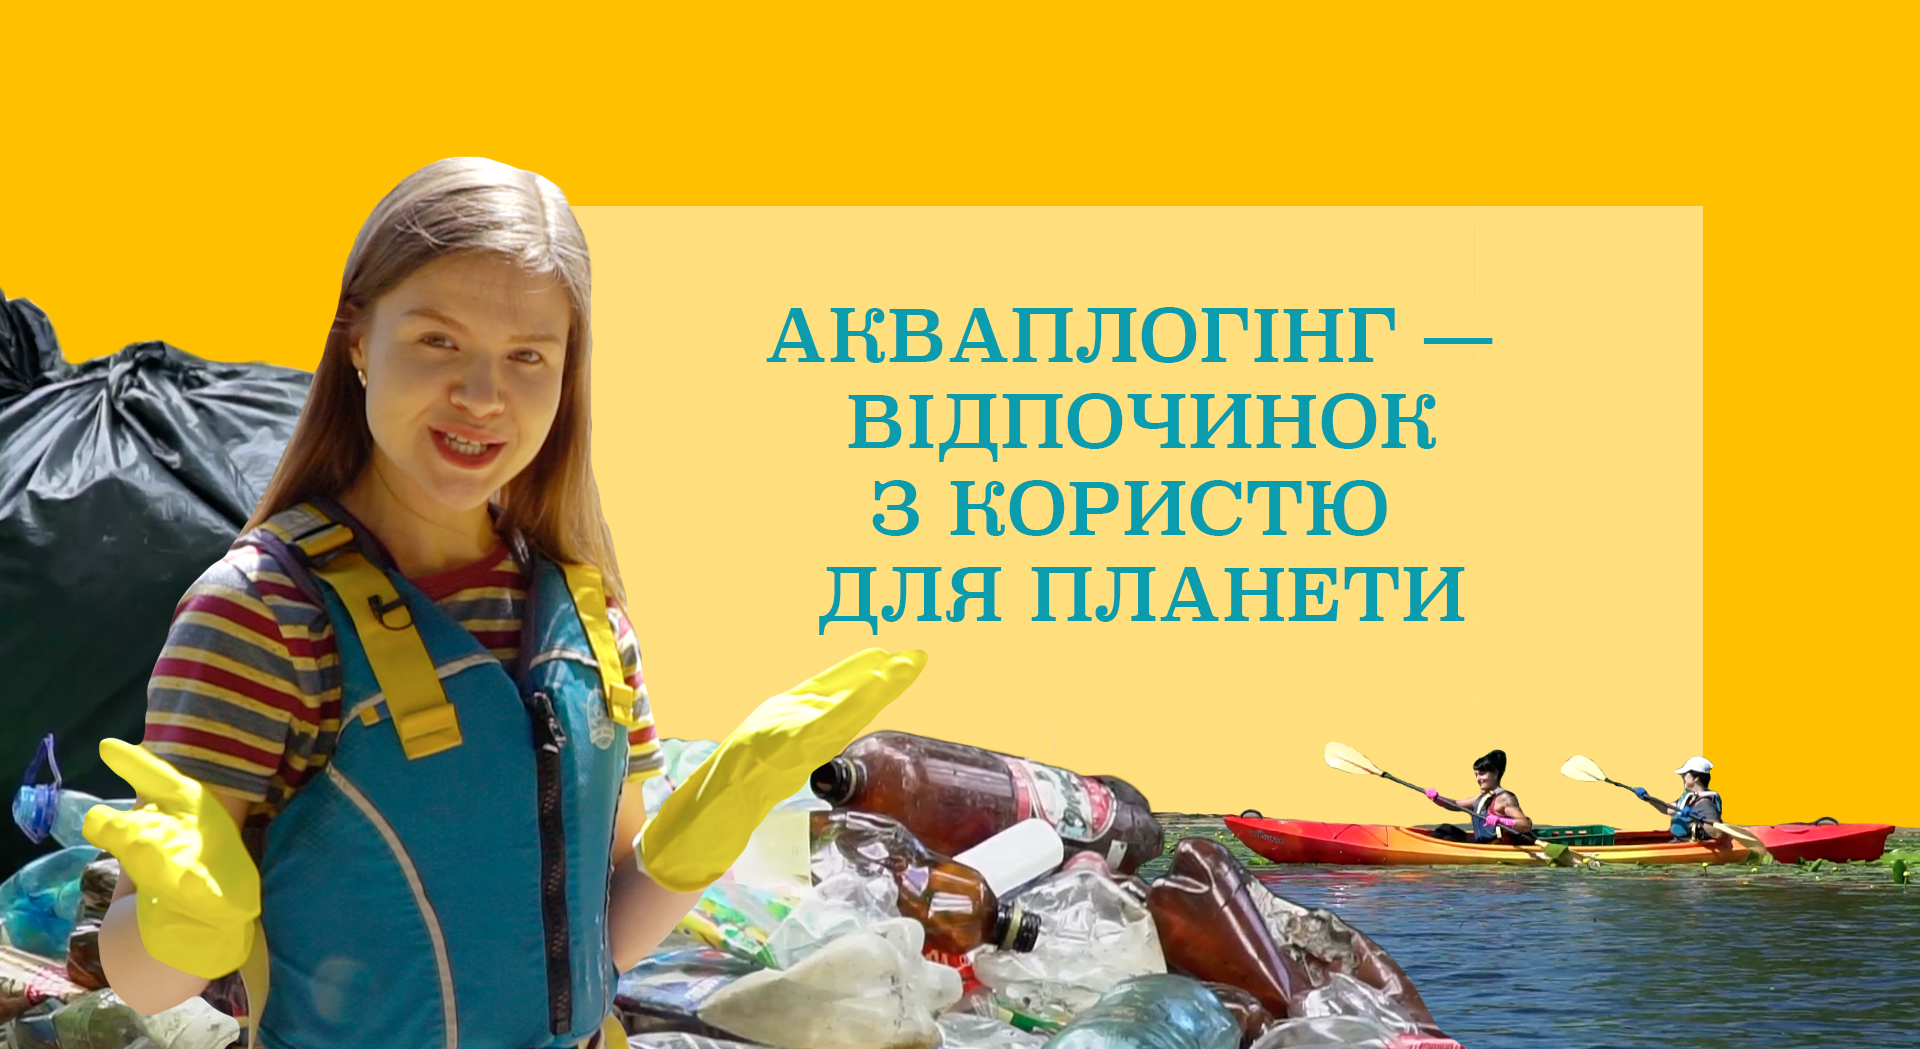 Очистити Дніпро від сміття: що таке акваплогінг